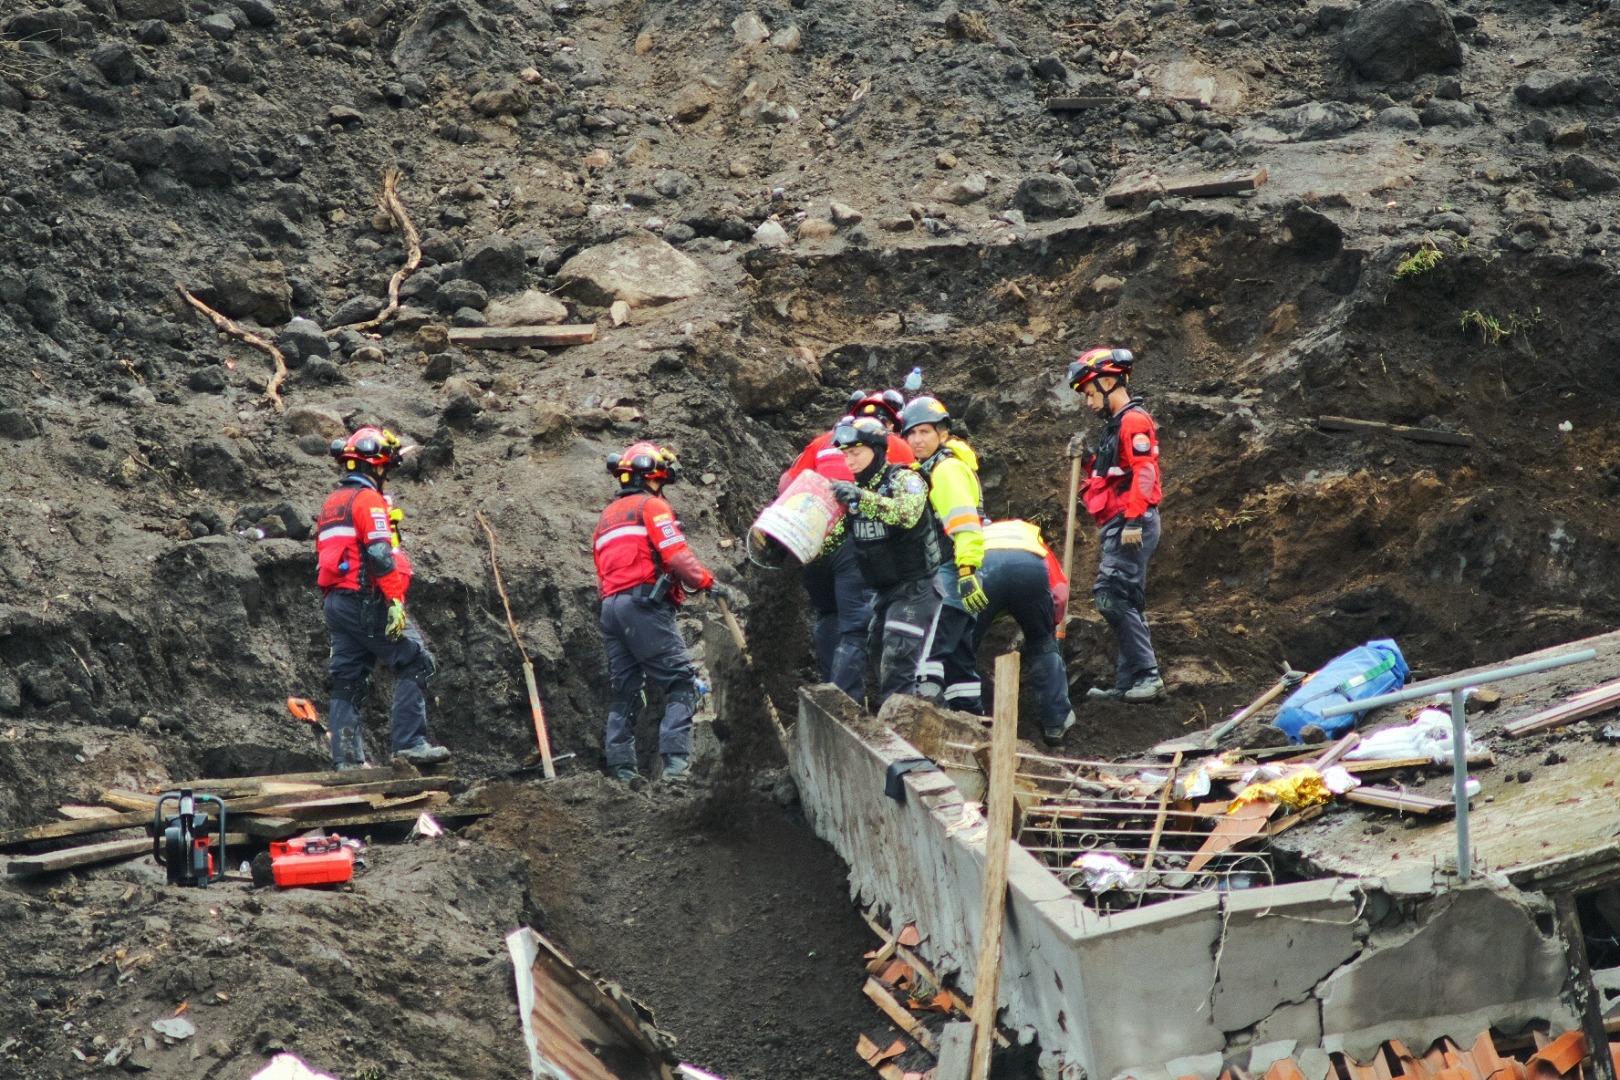 Ekvador'da toprak kayması. 16 kişi hayatını kaybetti